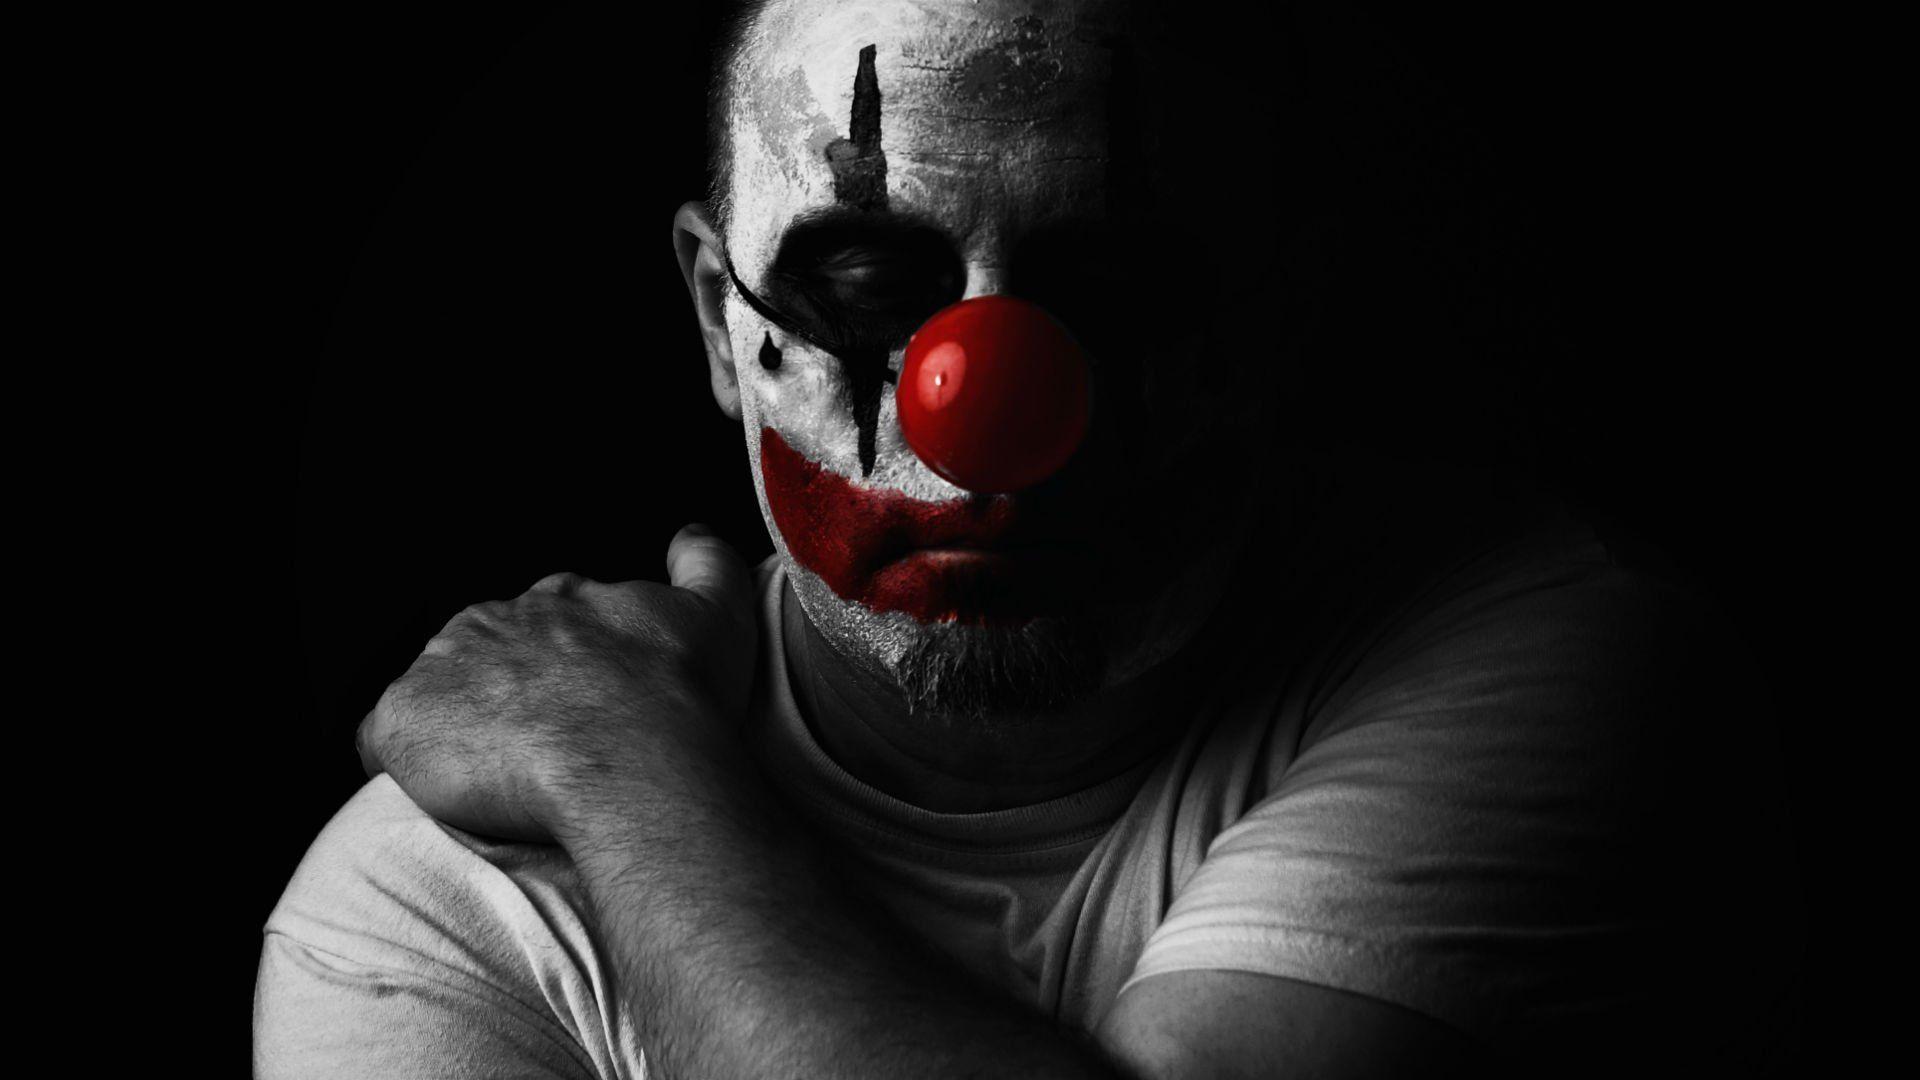 Sad Clown Wallpaper Free Sad .wallpaperaccess.com